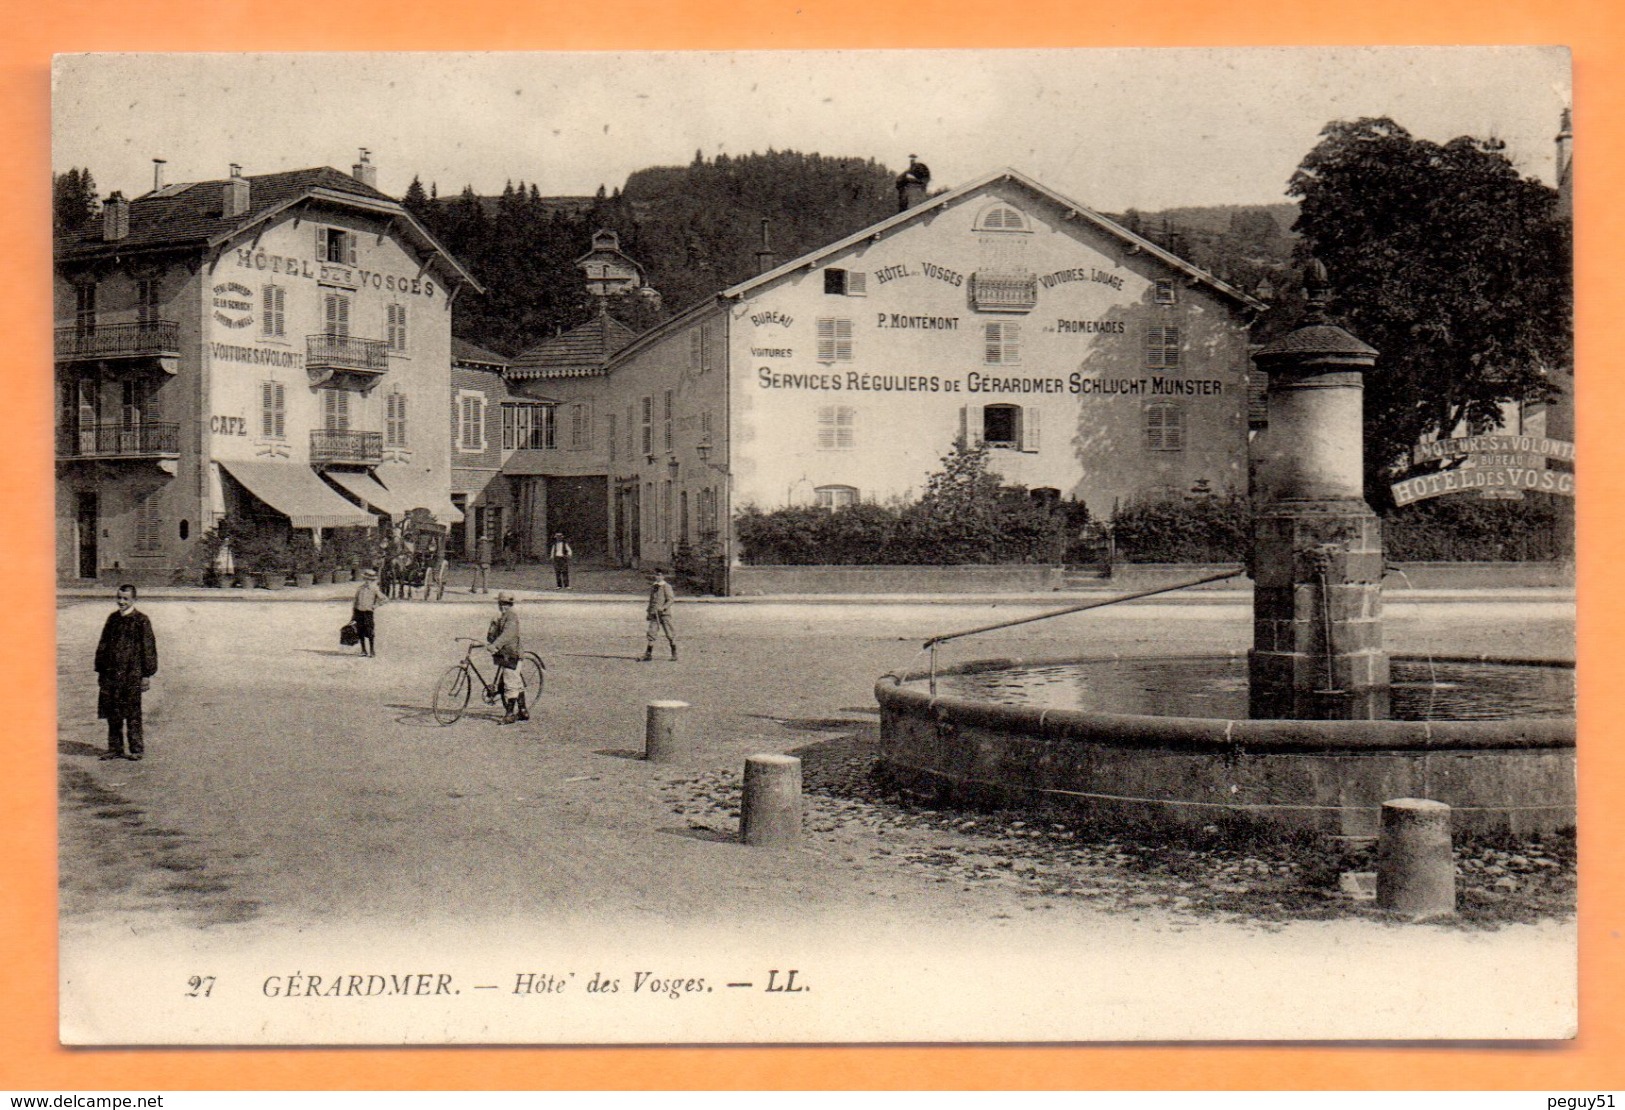 88. Gérardmer. Hôtel Des Vosges. Location De Voitures. Services Réguliers De Gérardmer, Schlucht, Munster. - Gerardmer